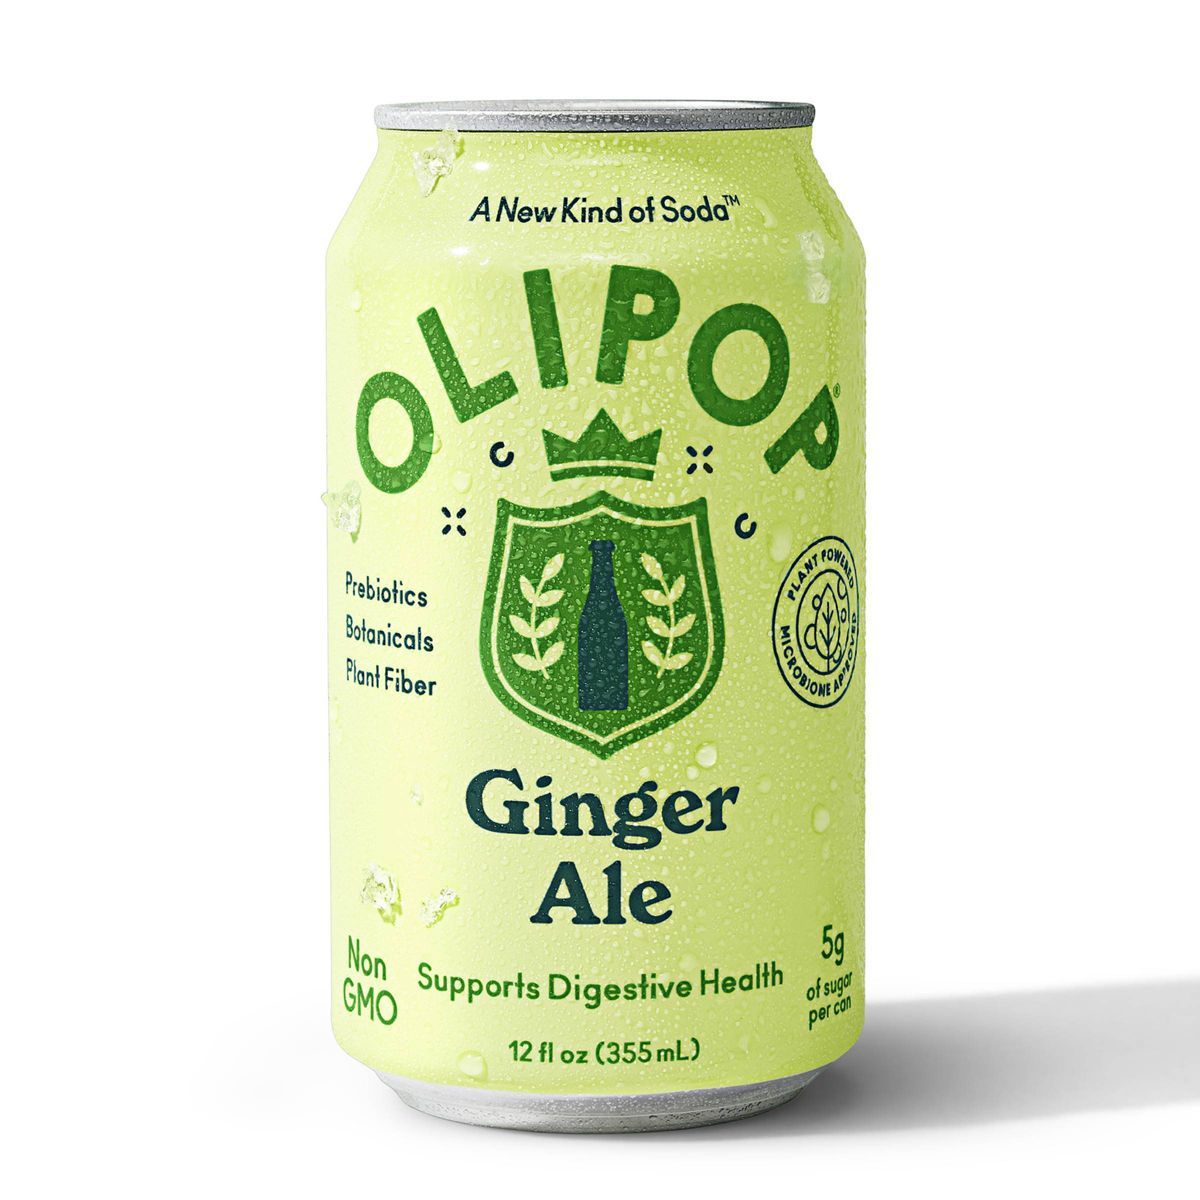 OLIPOP Ginger Ale Prebiotic Soda - 12 fl oz | Target